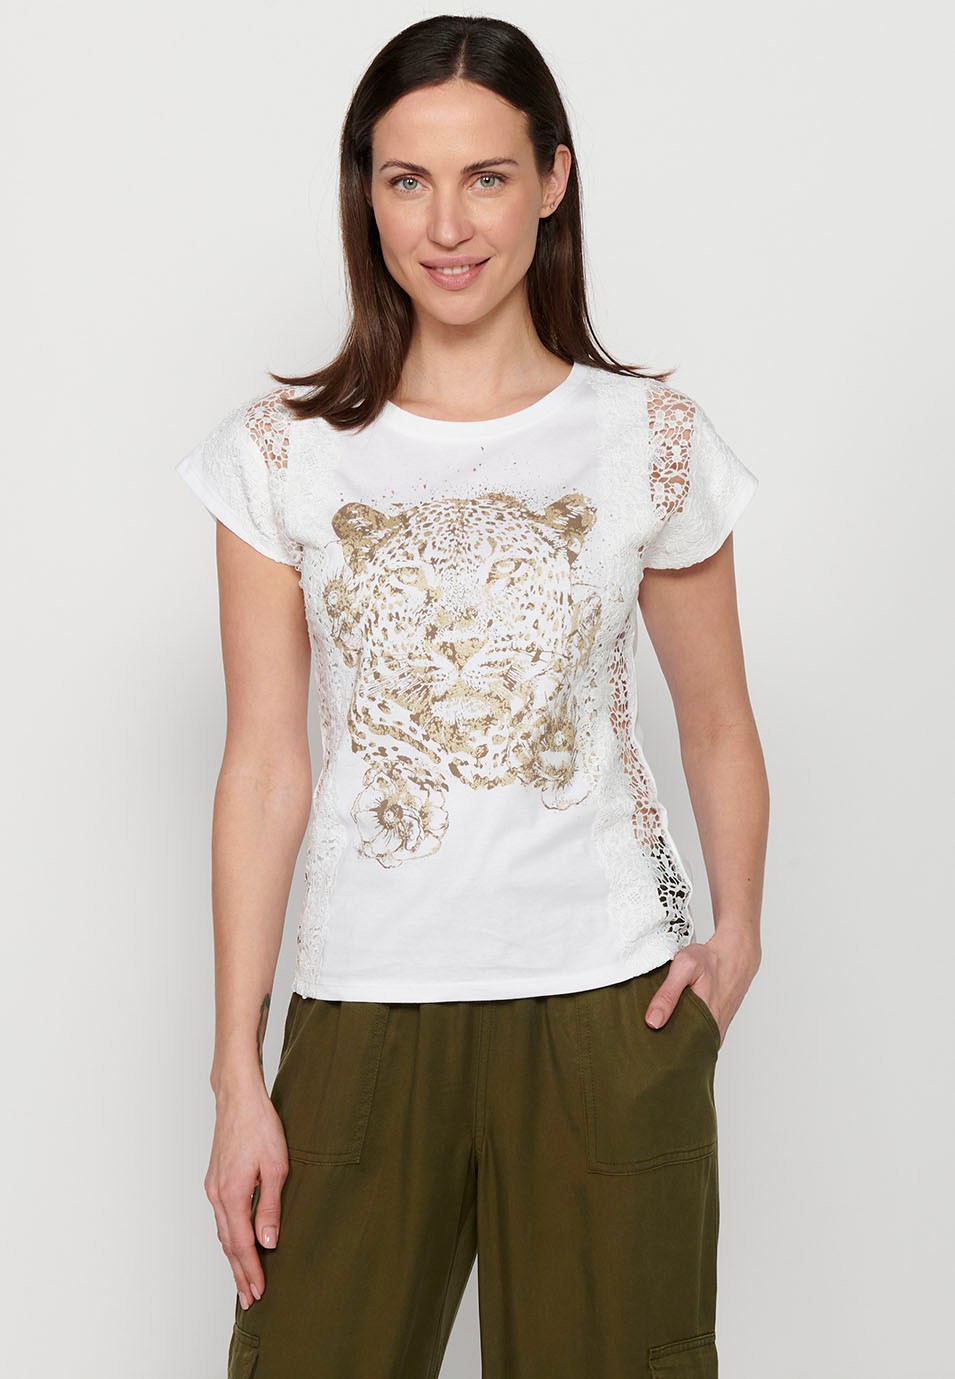 Kurzarm-T-Shirt mit Spitzendetail und Frontprint, weiße Farbe für Damen